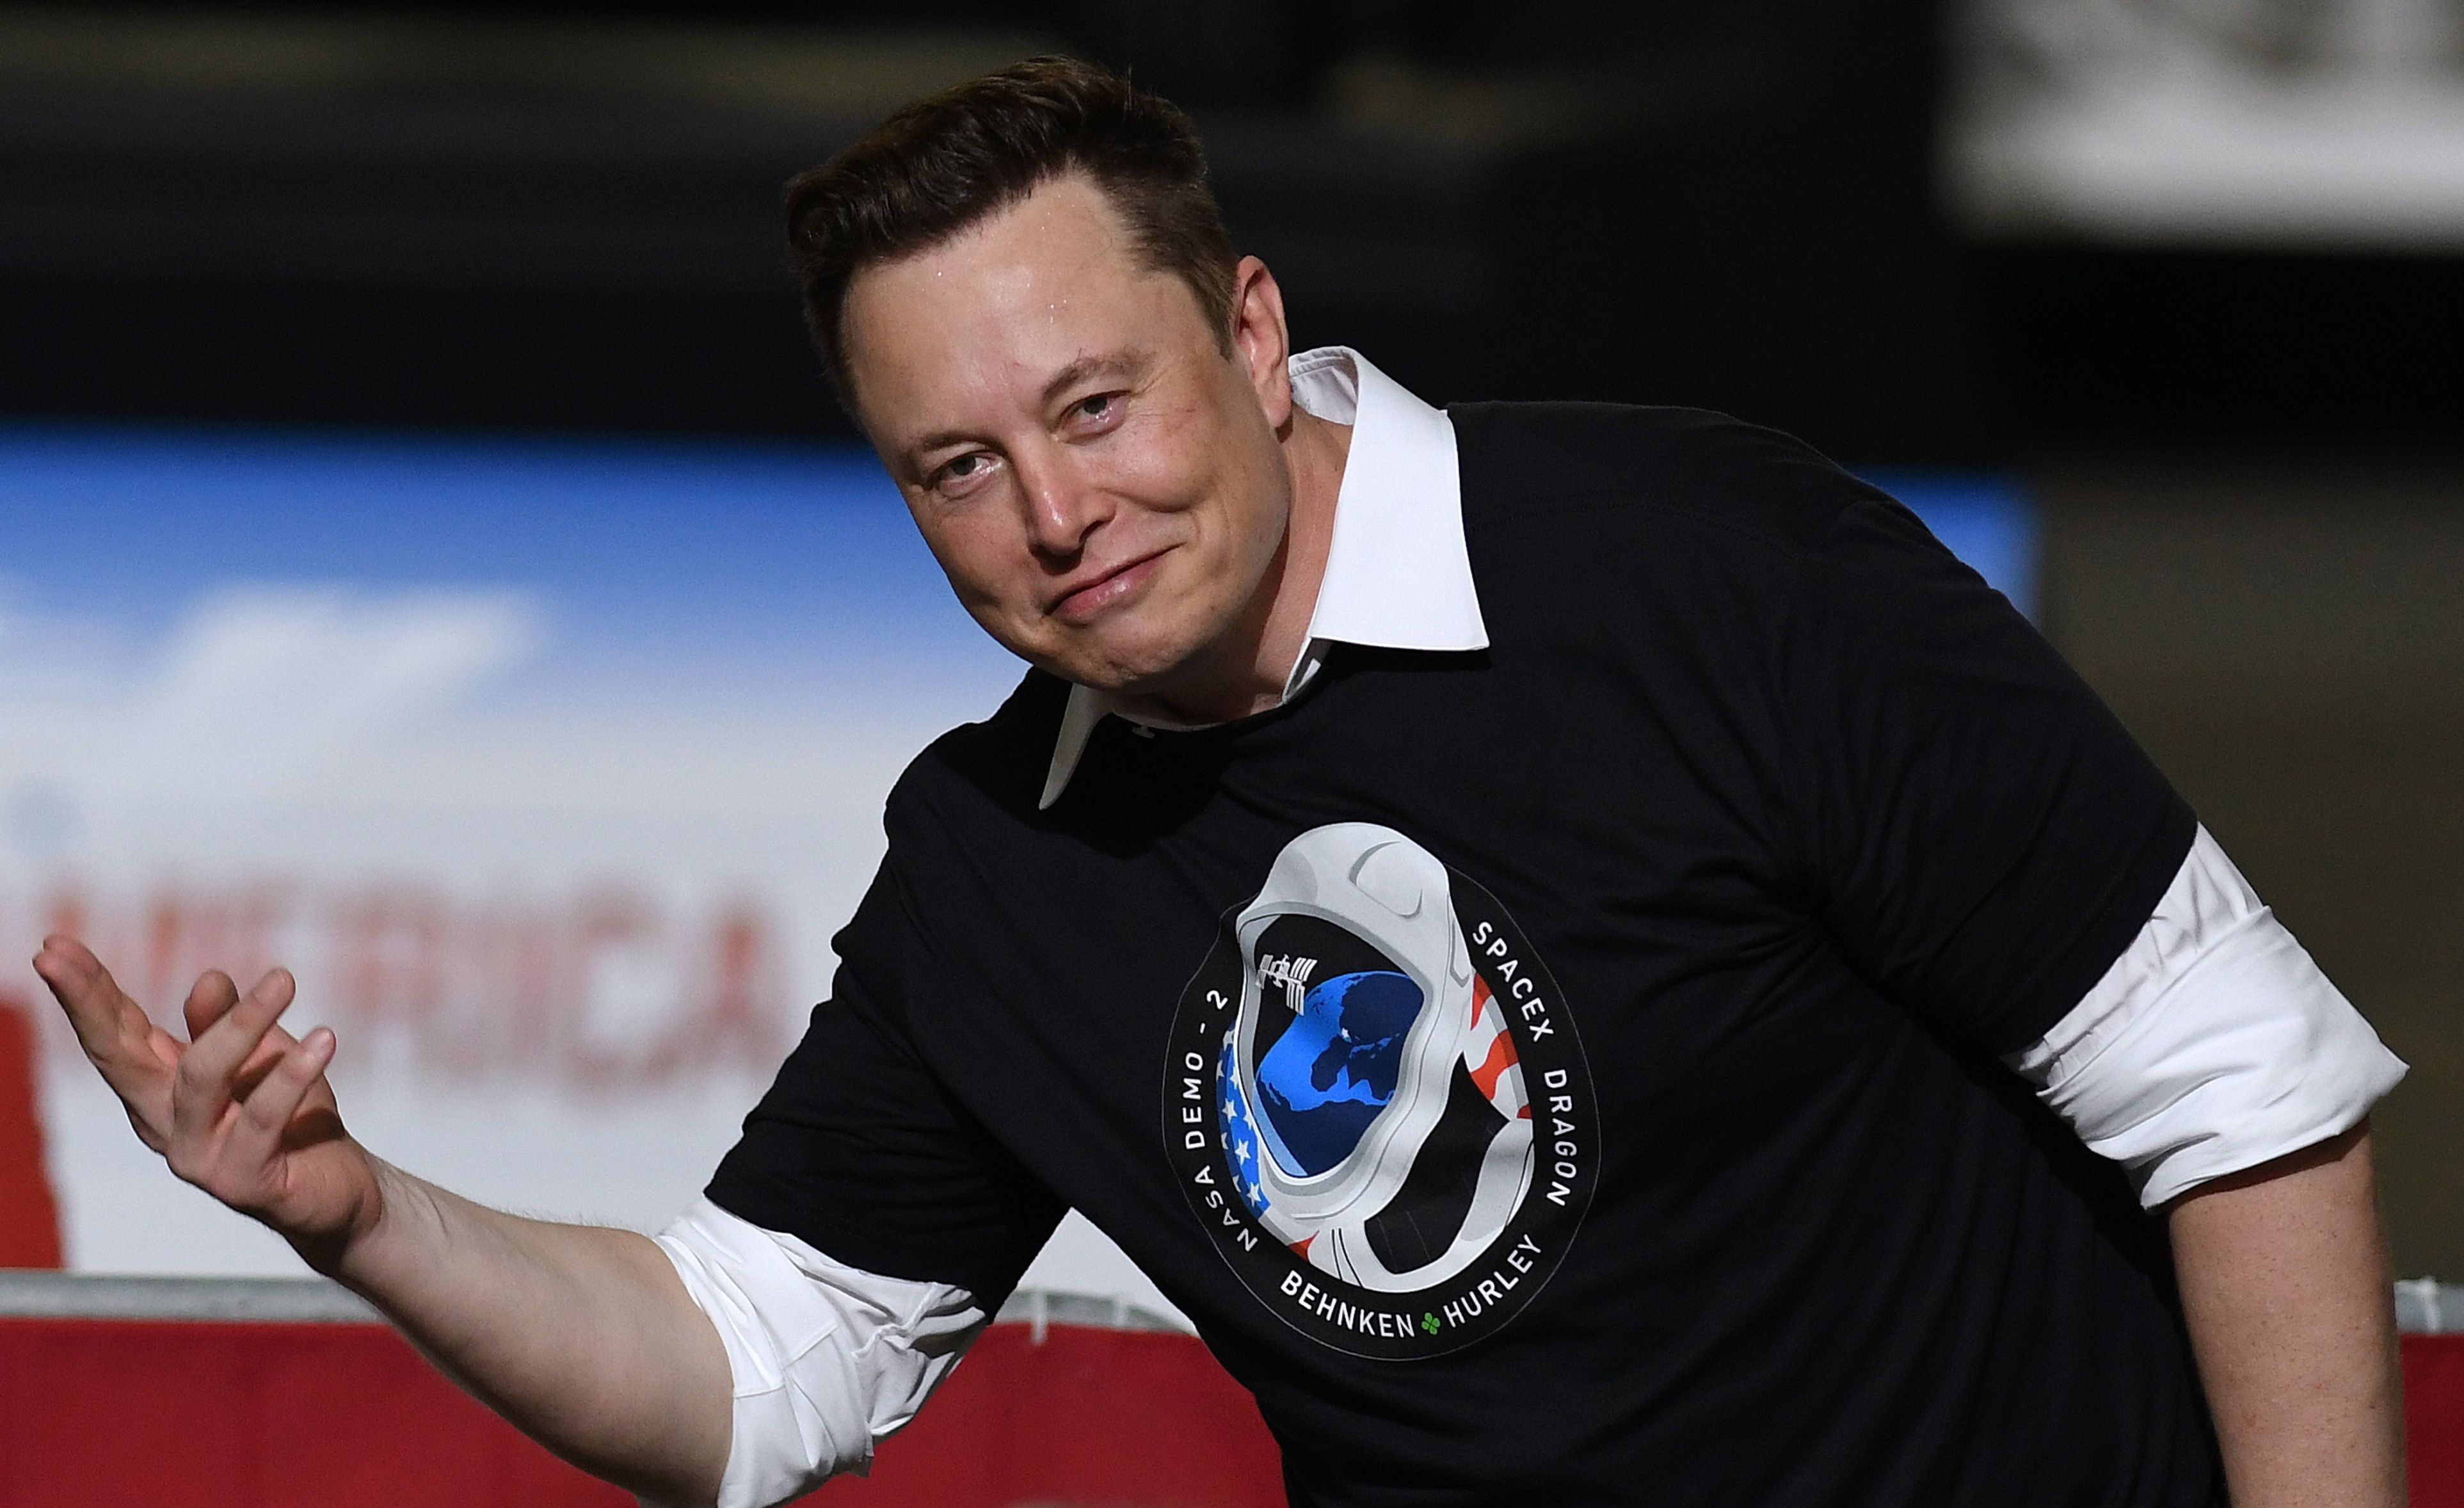 Elon Musk face o nouă mutare şi pune la bătaie pe bursă 1% din Tesla: Acţiunile valorează 5 mld. dolari